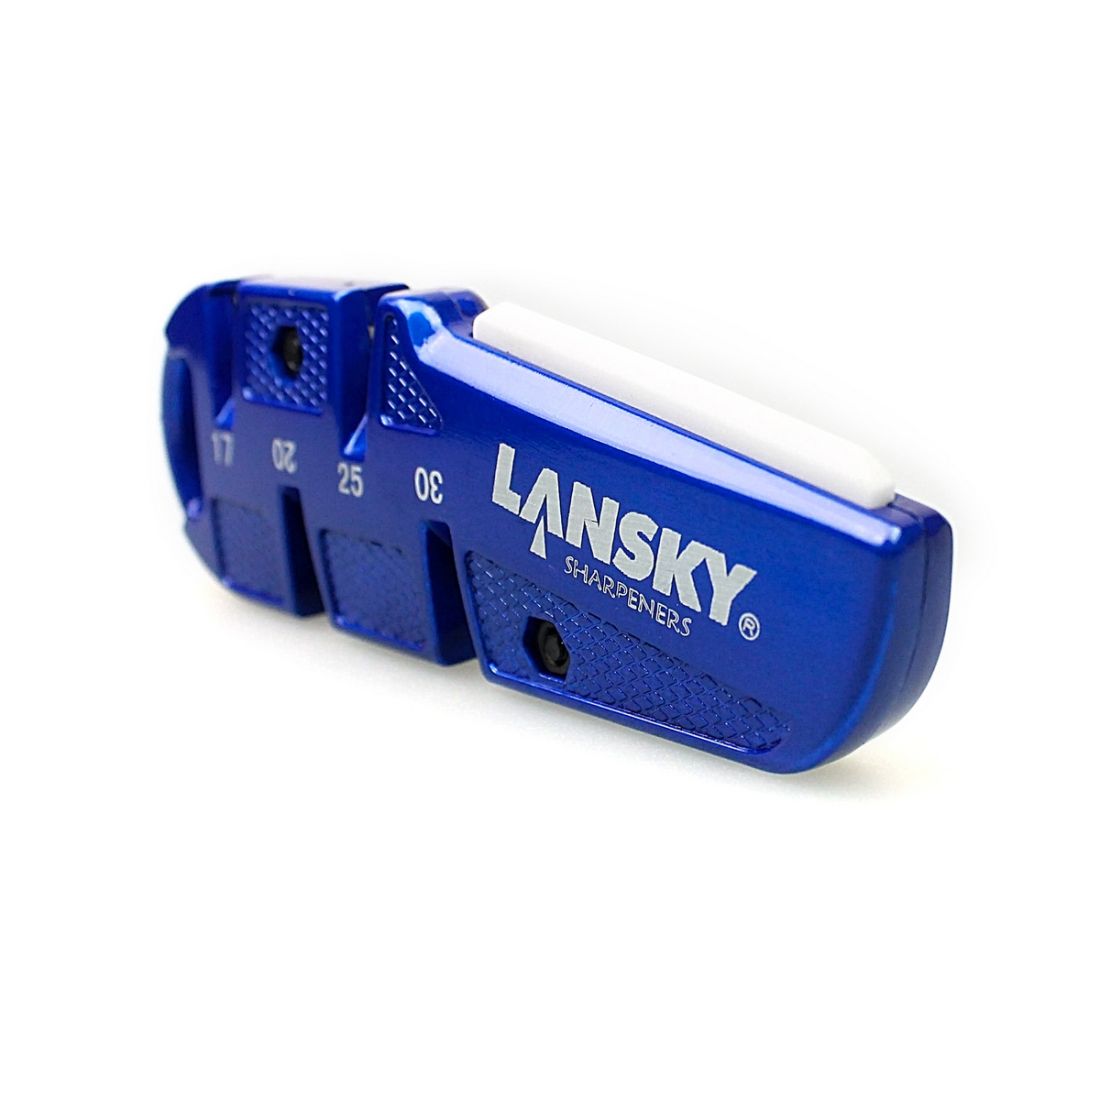 Точилка для ножей Lansky Quadsharp